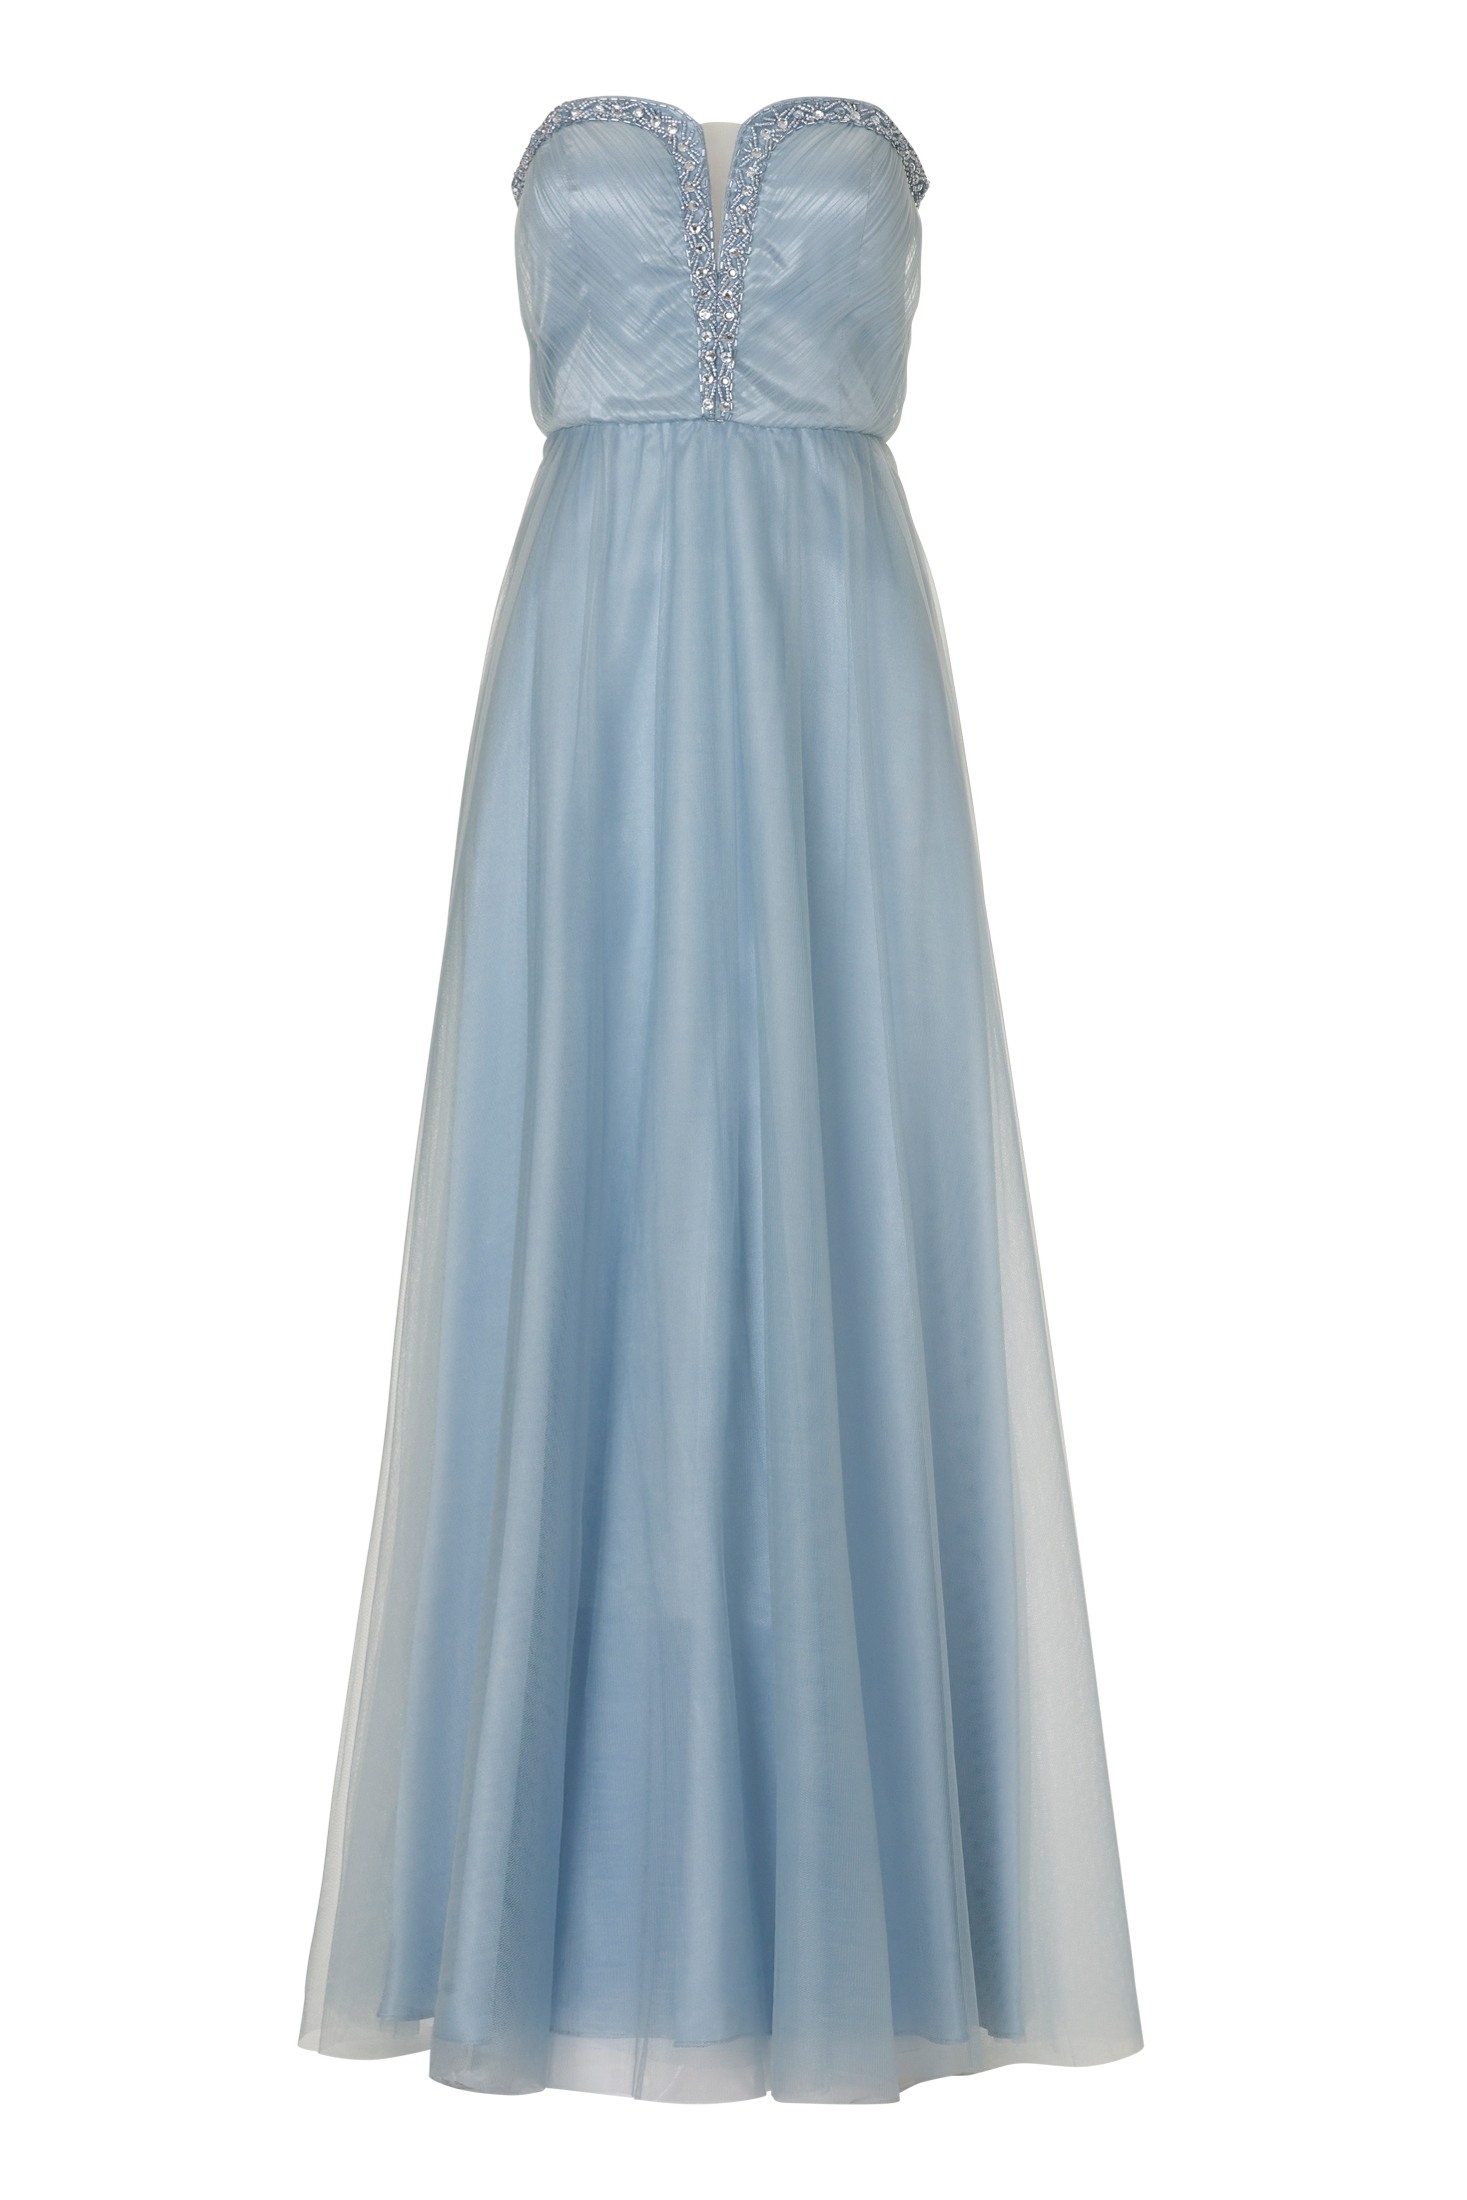 formal erstaunlich langes kleid hellblau stylish - abendkleid